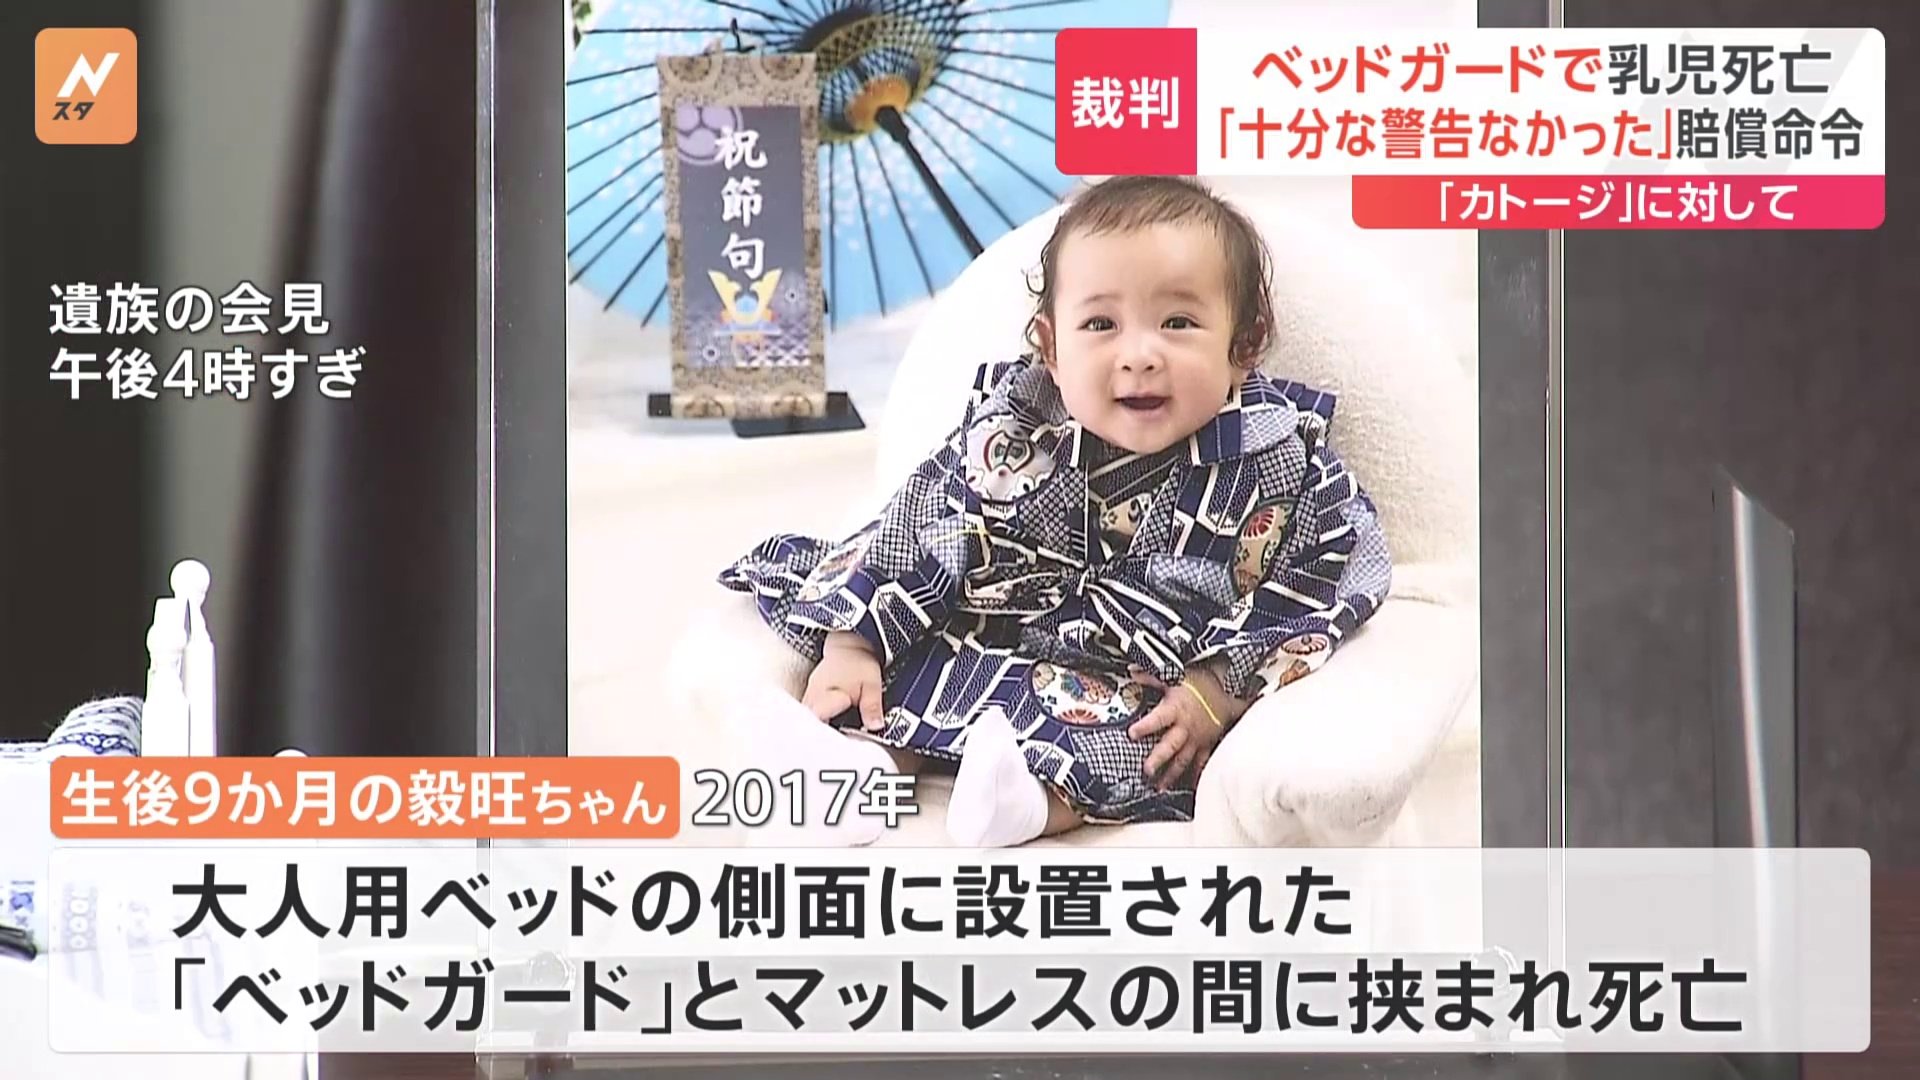 生後9か月の男の子“ベッドガード”に挟まり死亡「カトージ」に3500万円超の賠償命令「十分な警告なかった」東京地裁判決